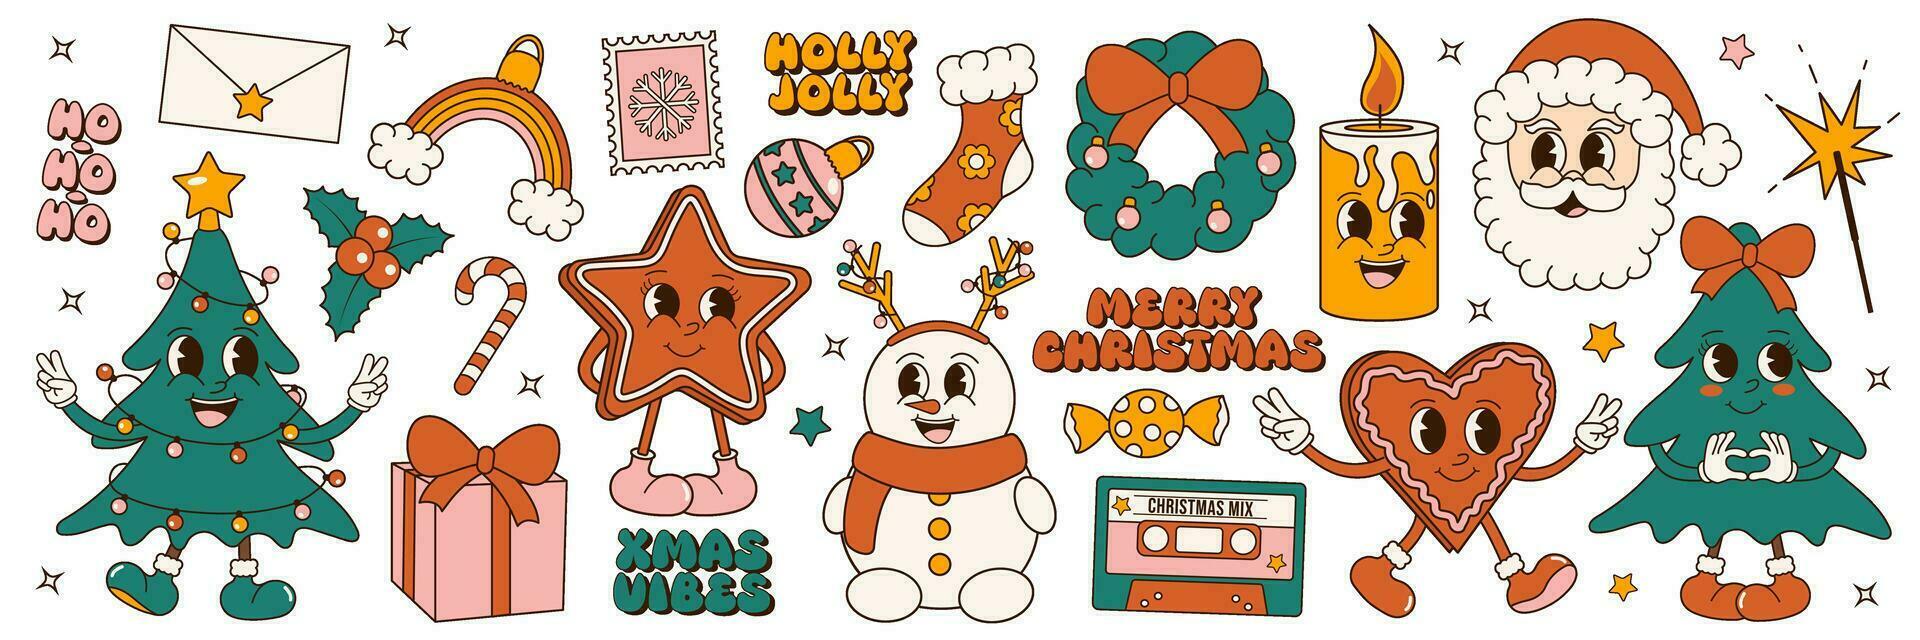 vrolijk kerstmis. groovy jaren 70 Kerstmis sticker set. modieus retro tekenfilm stijl elementen en zinnen vector